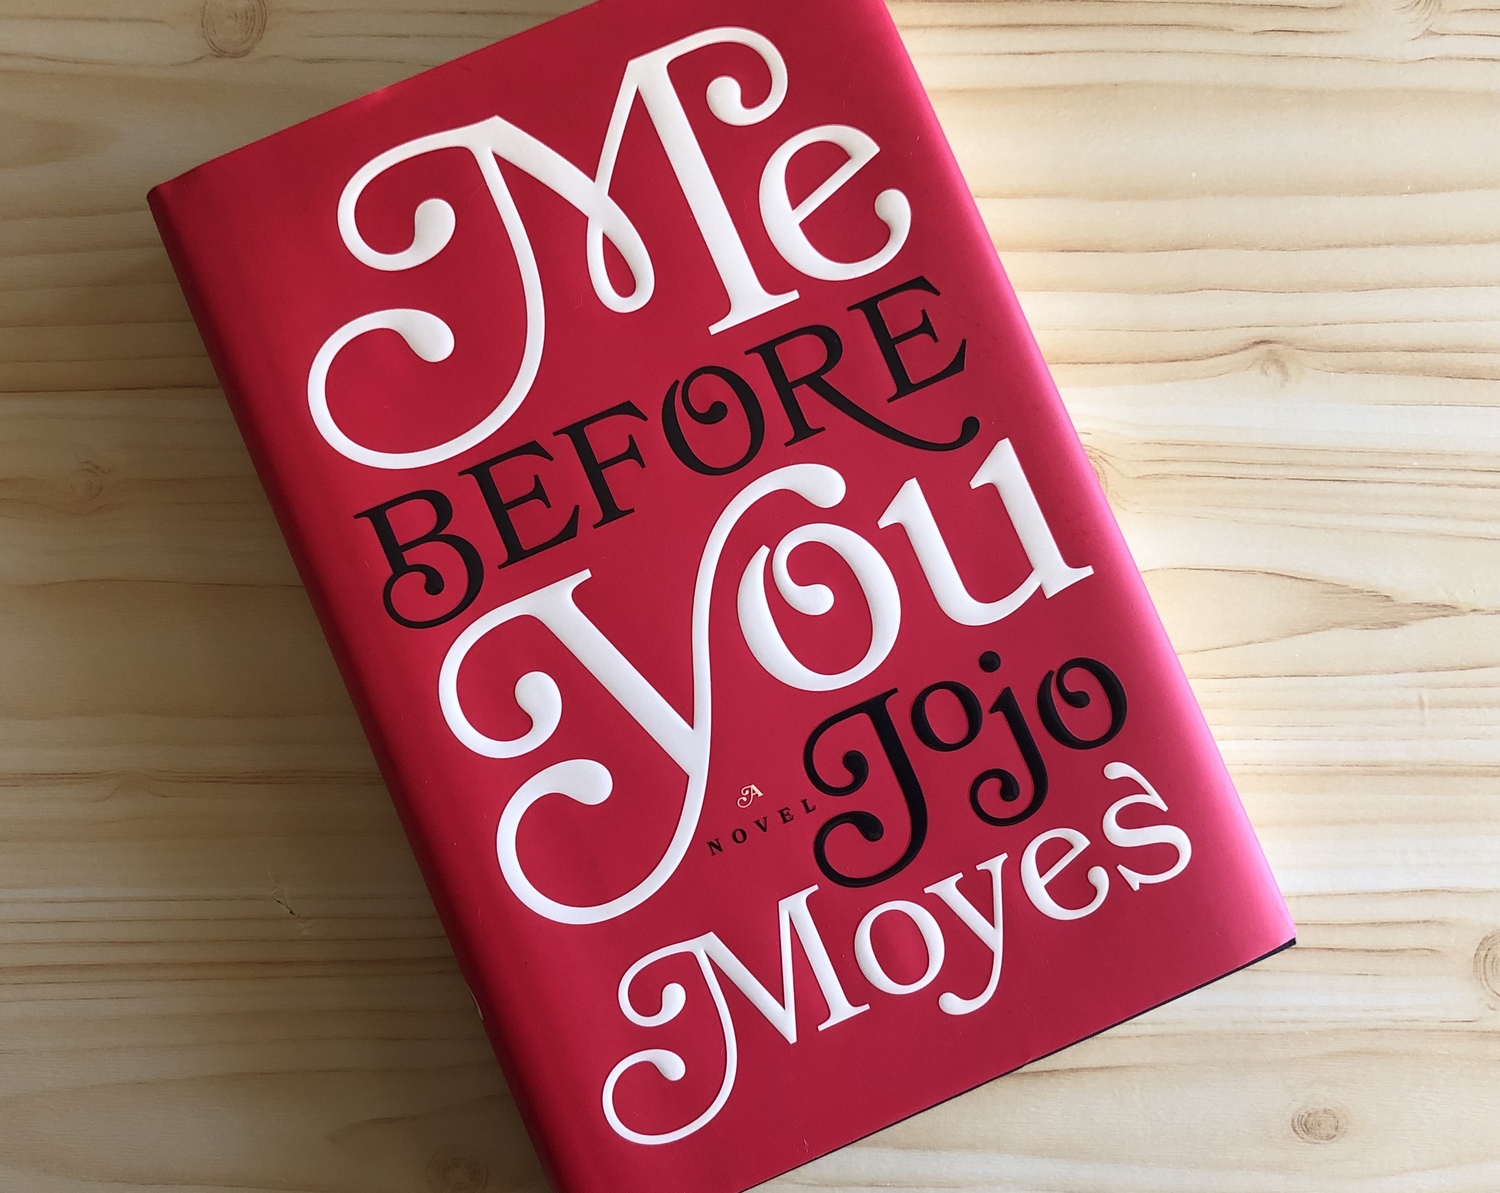 Foto do livro Me Before You, de Jojo Moyes ilustra postagem sobre o anúncio da adaptação cinematográfica do novo romance da autora, The GIver of Stars.